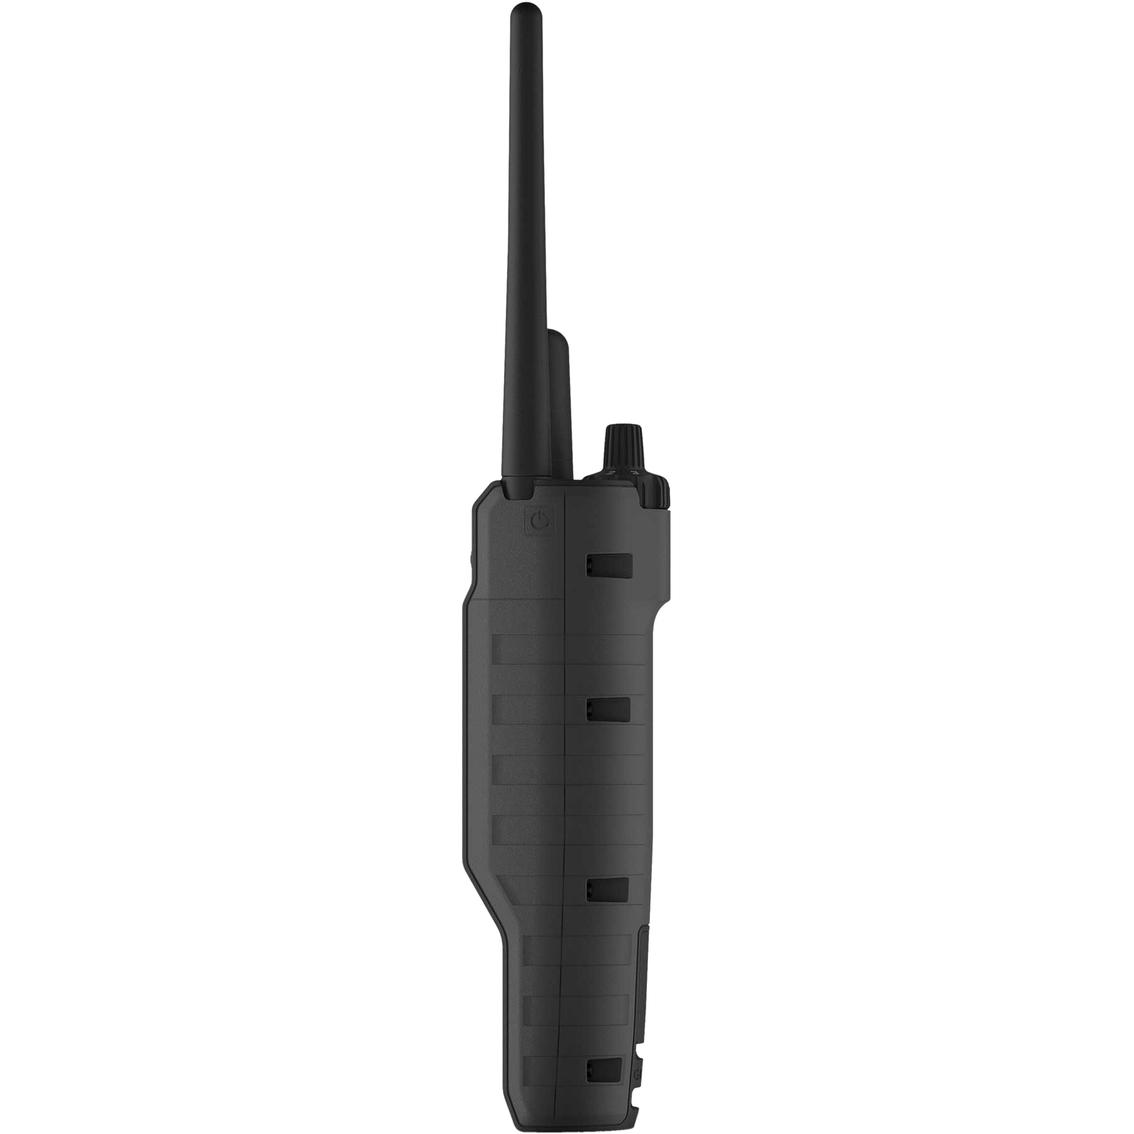 Garmin Pro 550 Plus Handheld Dog Training and Tracking Device - Image 3 of 3